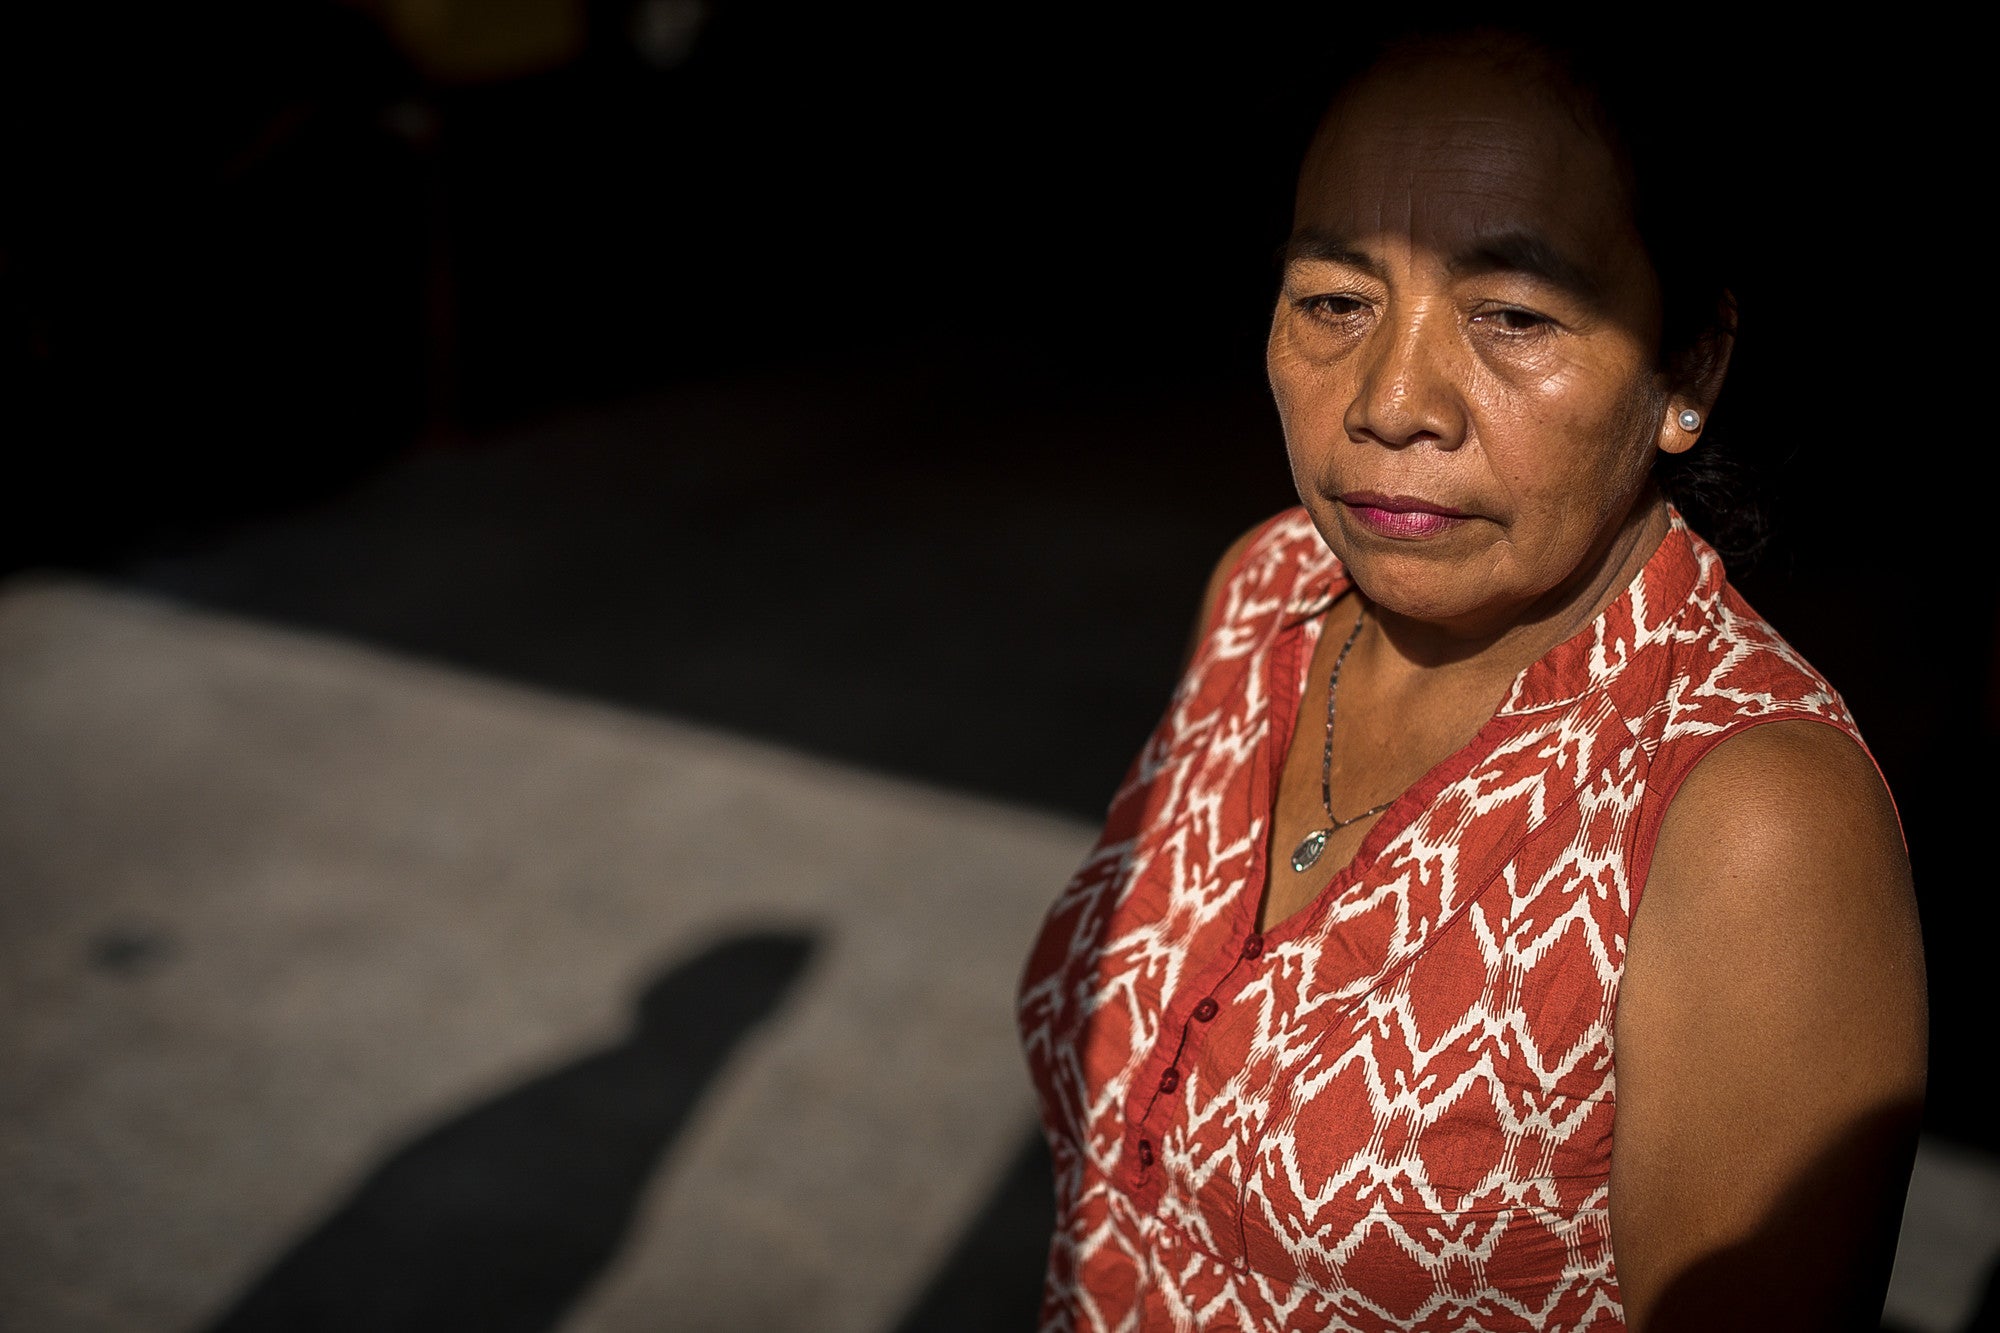 Maria Faustina foi fotografada na Cidade da Guatemala em 13 de abril de 2018, como parte da Campanha dos Trabalhadores Domésticos da CARE. Ela olha para frente em um quarto sombrio.